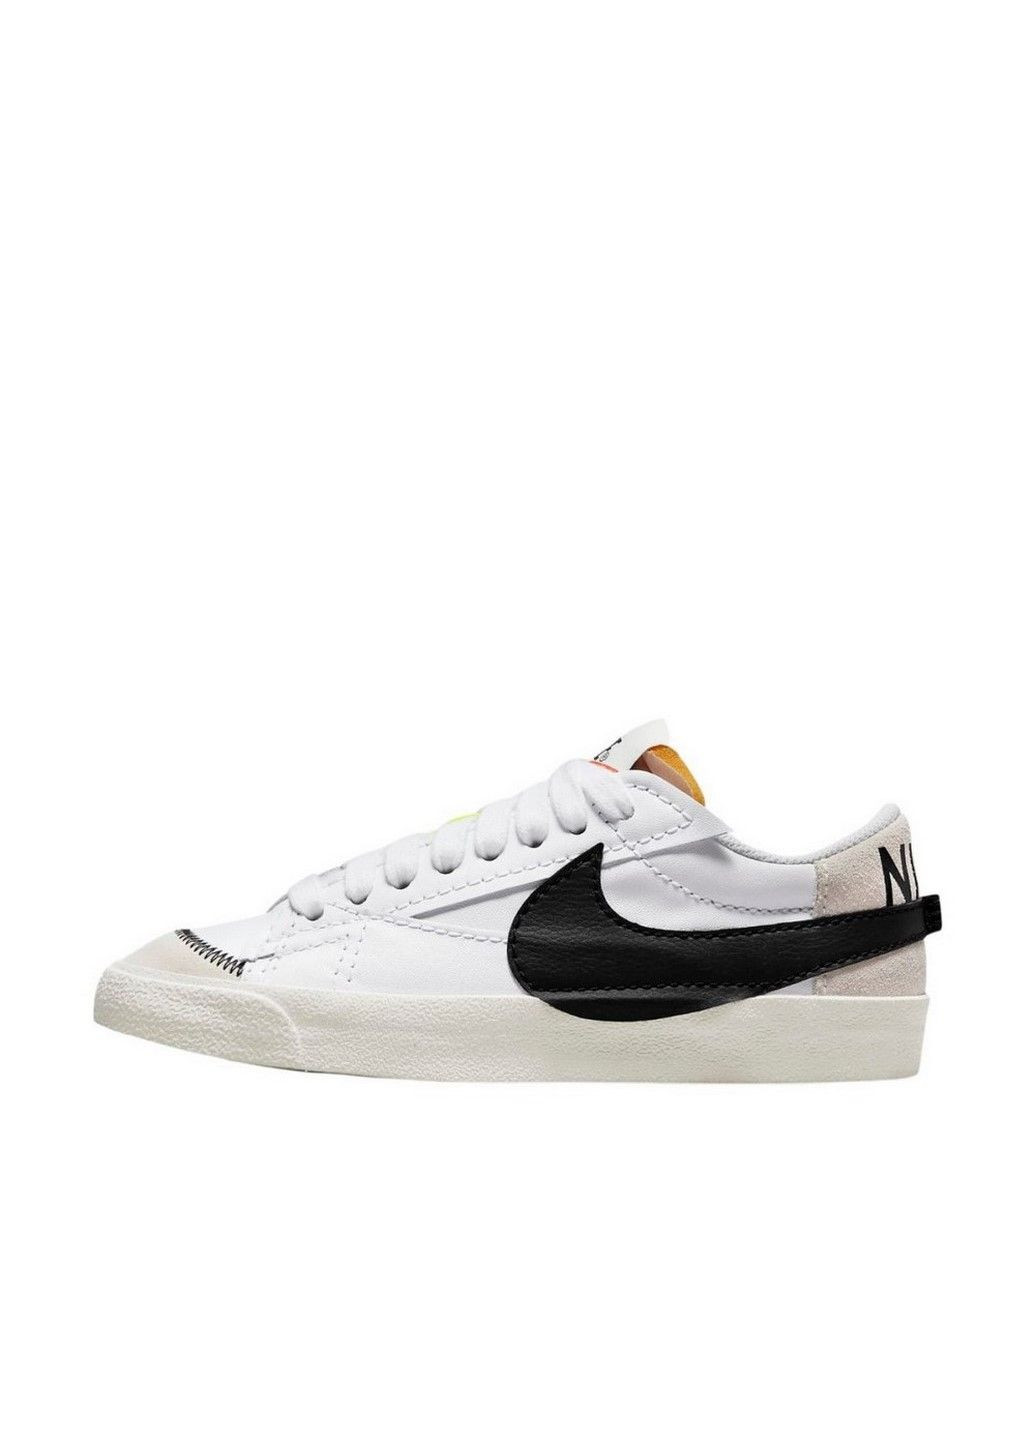 Білі осінні кросівки w blazer low `77 jumbo dq1470-101 Nike